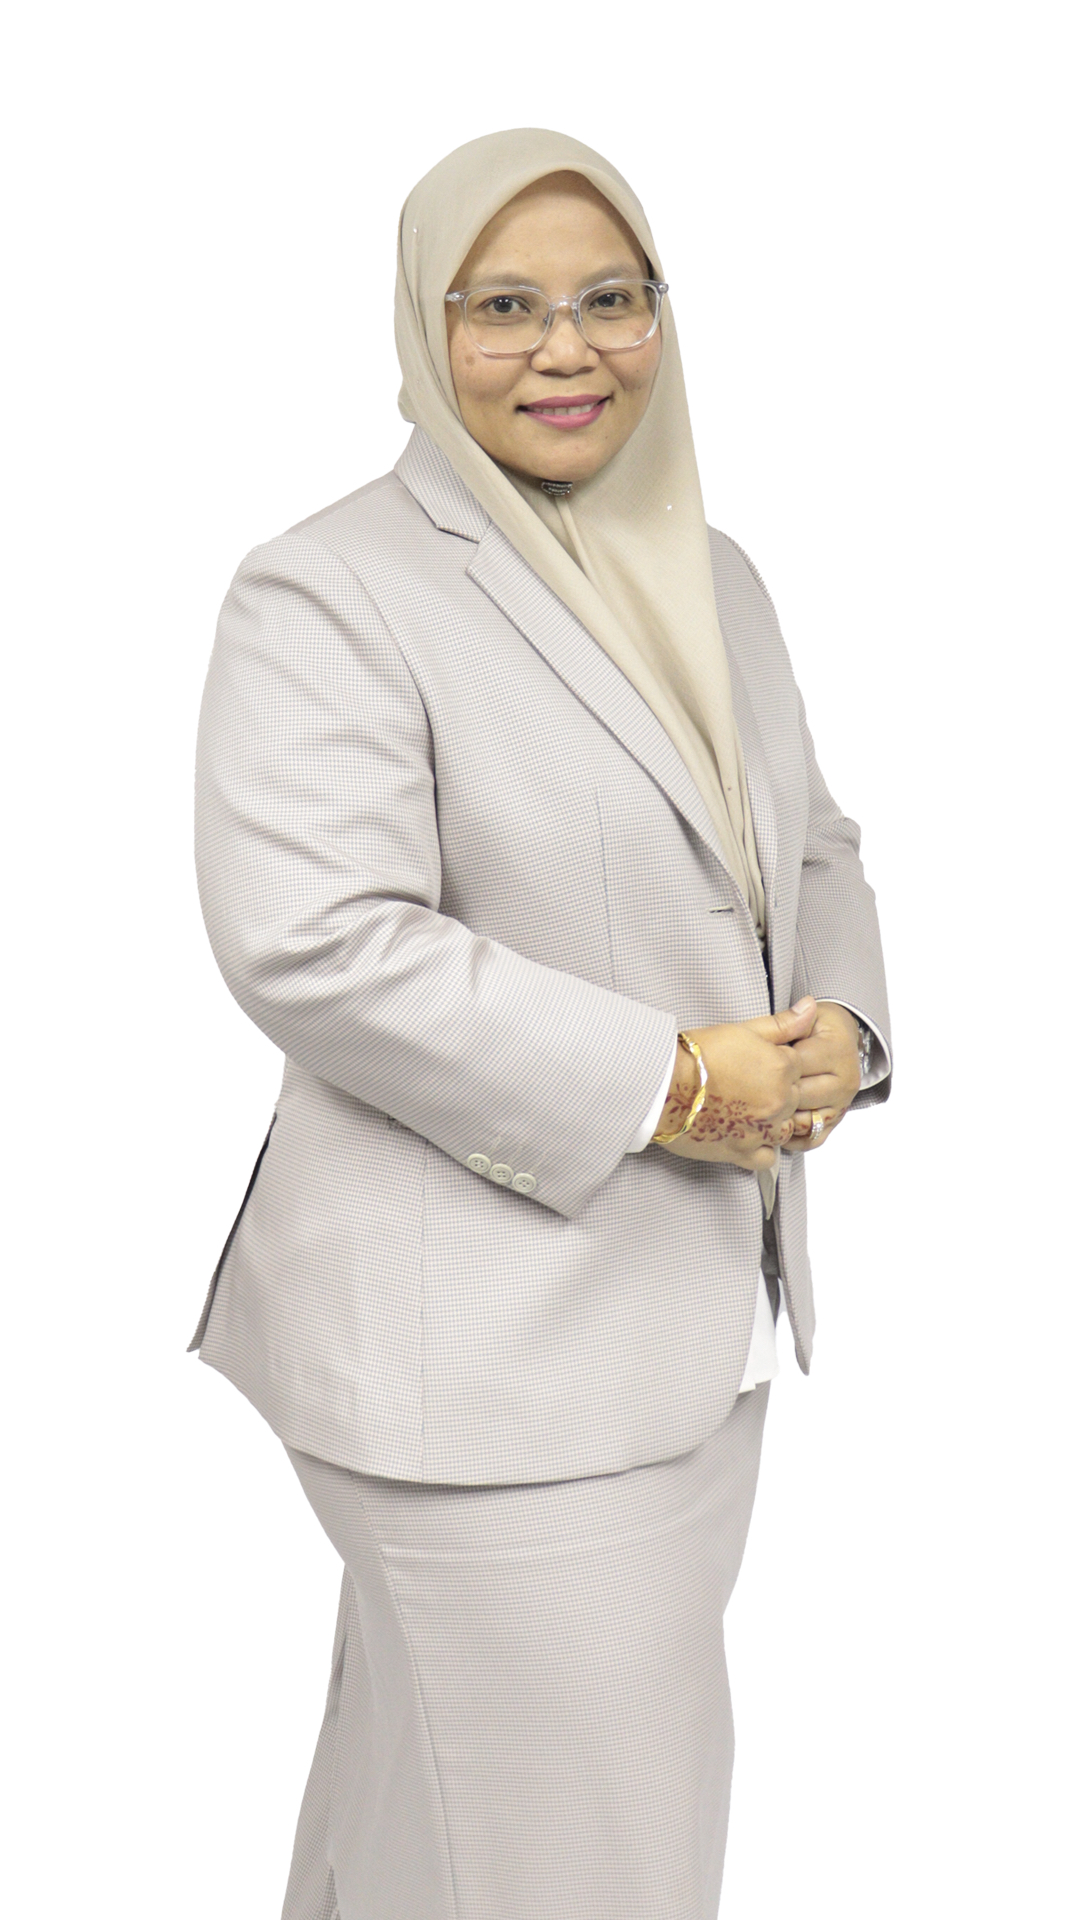 Chief Executive Officer, Perbadanan Setiausaha Kerajaan (PSK) Pahang